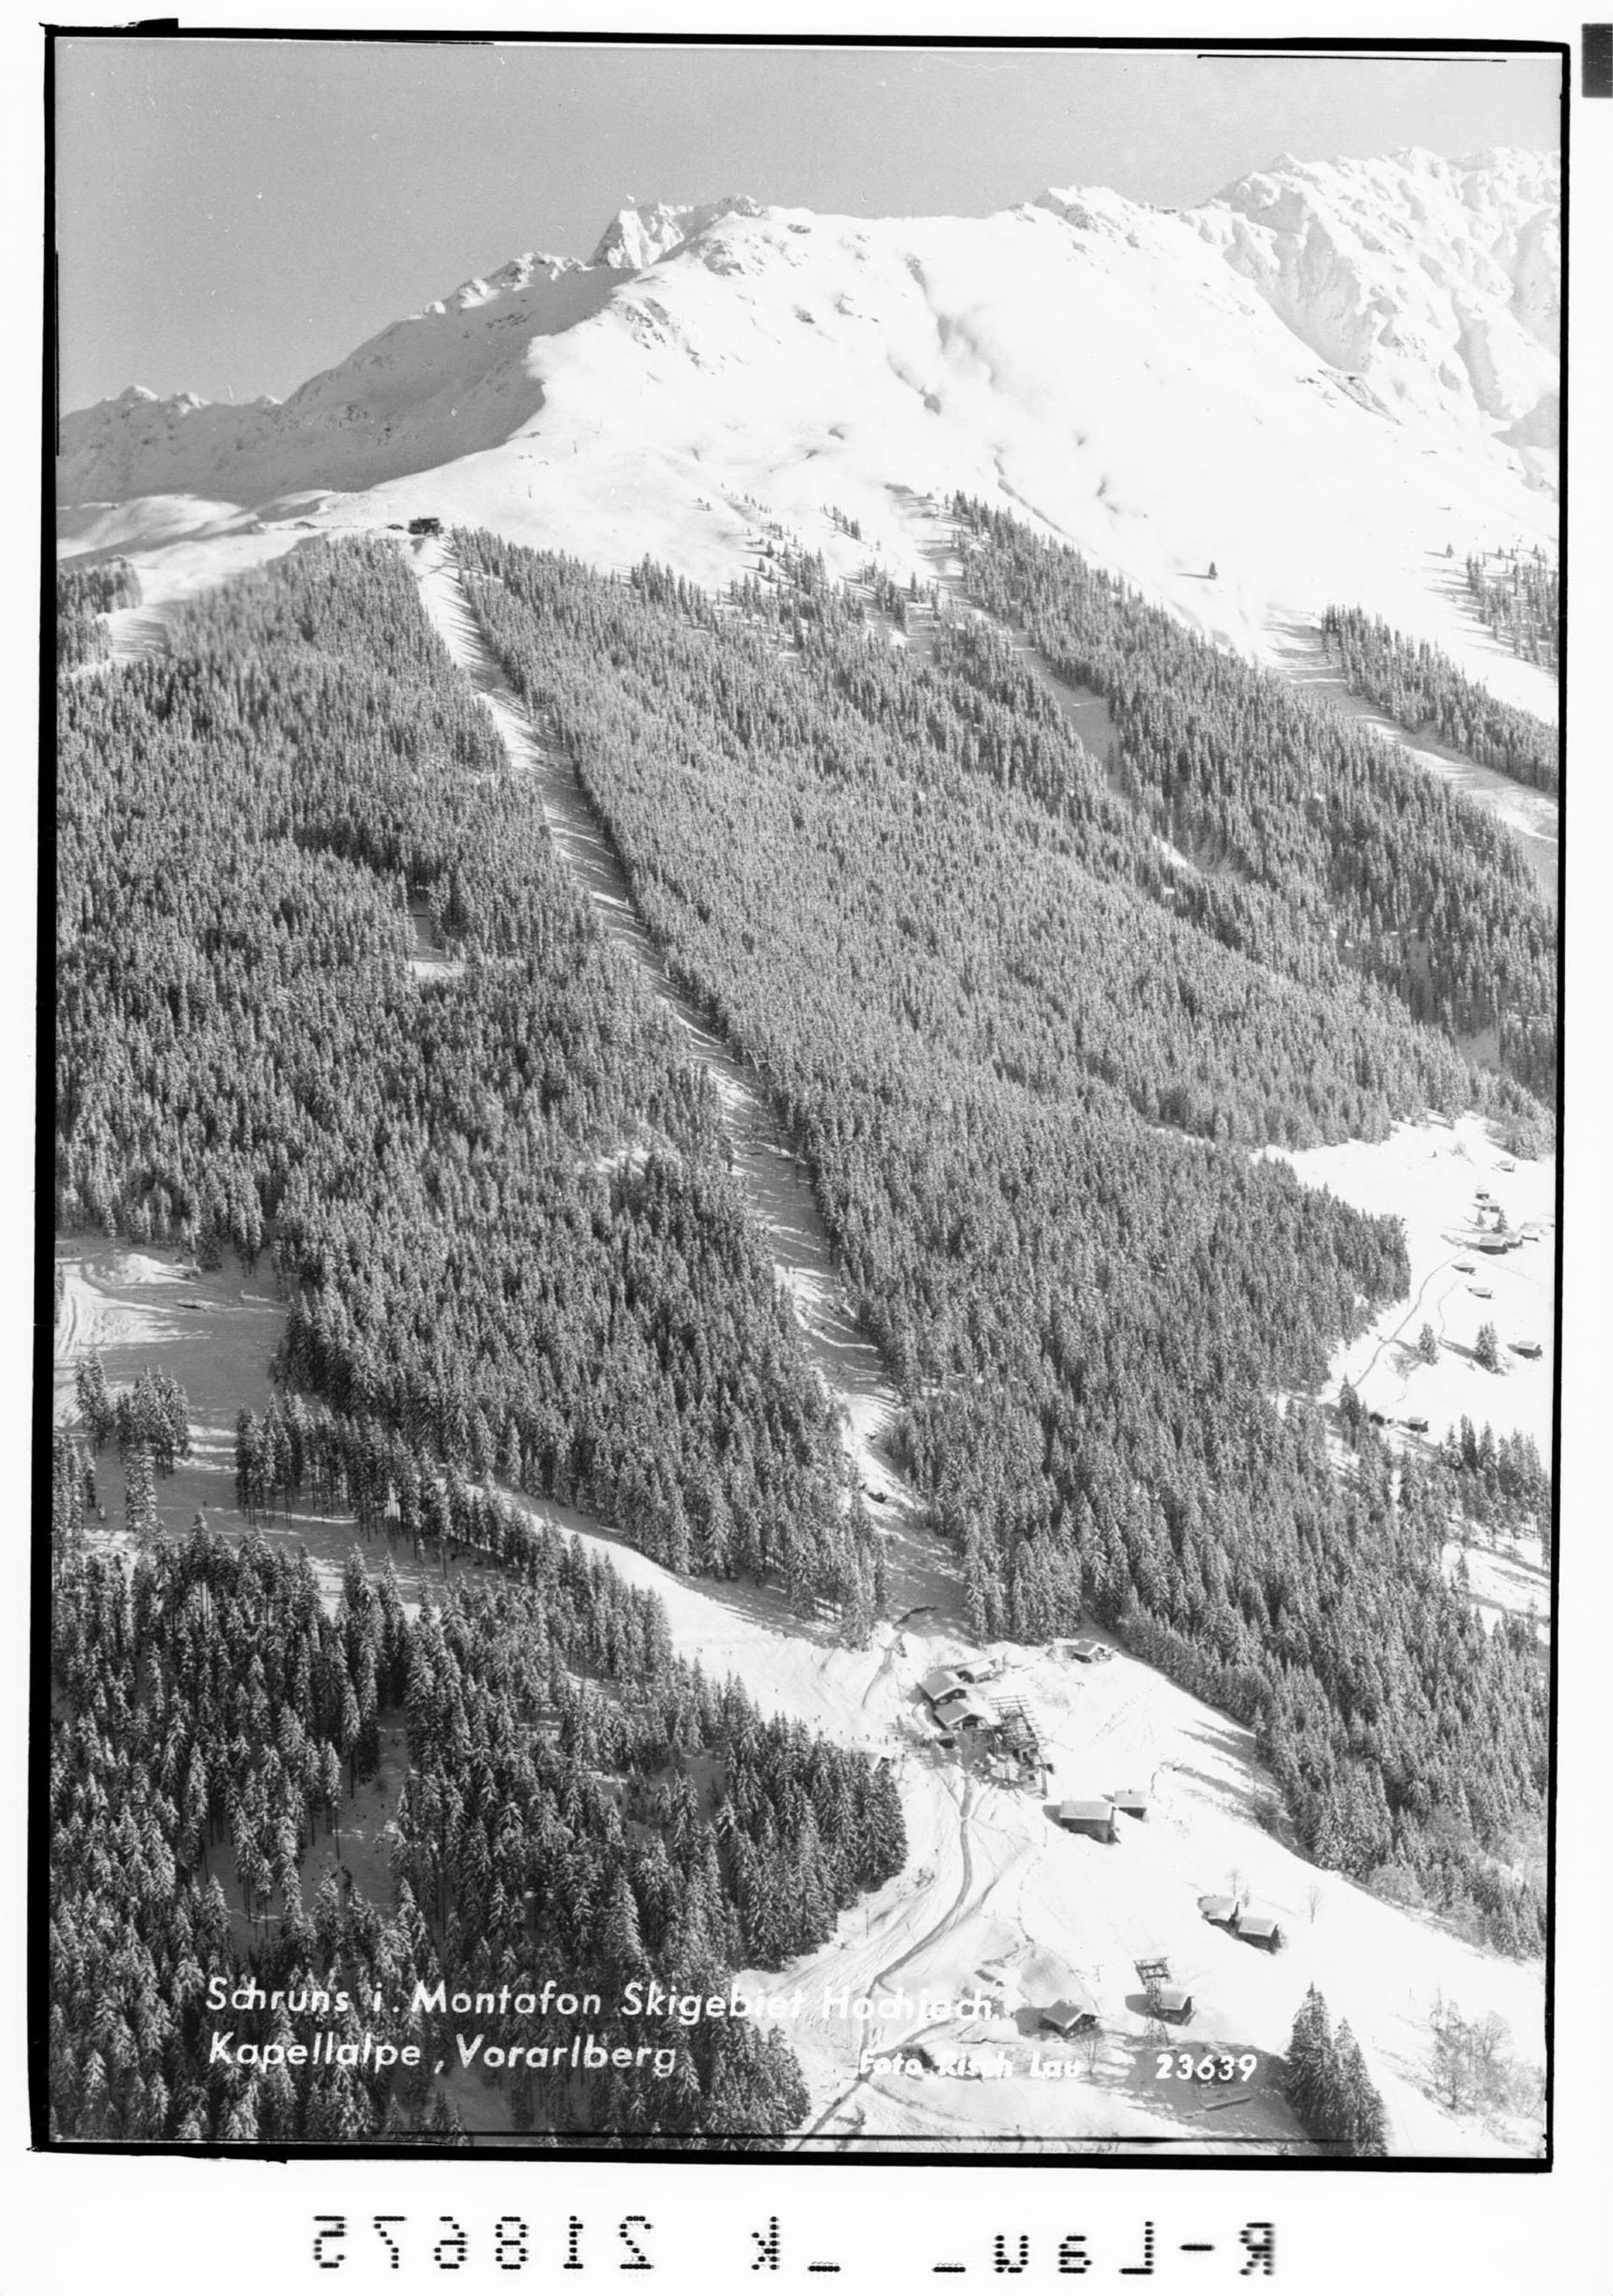 Schruns im Montafon Skigebiet Hochjoch Kapellalpe, Vorarlberg></div>


    <hr>
    <div class=